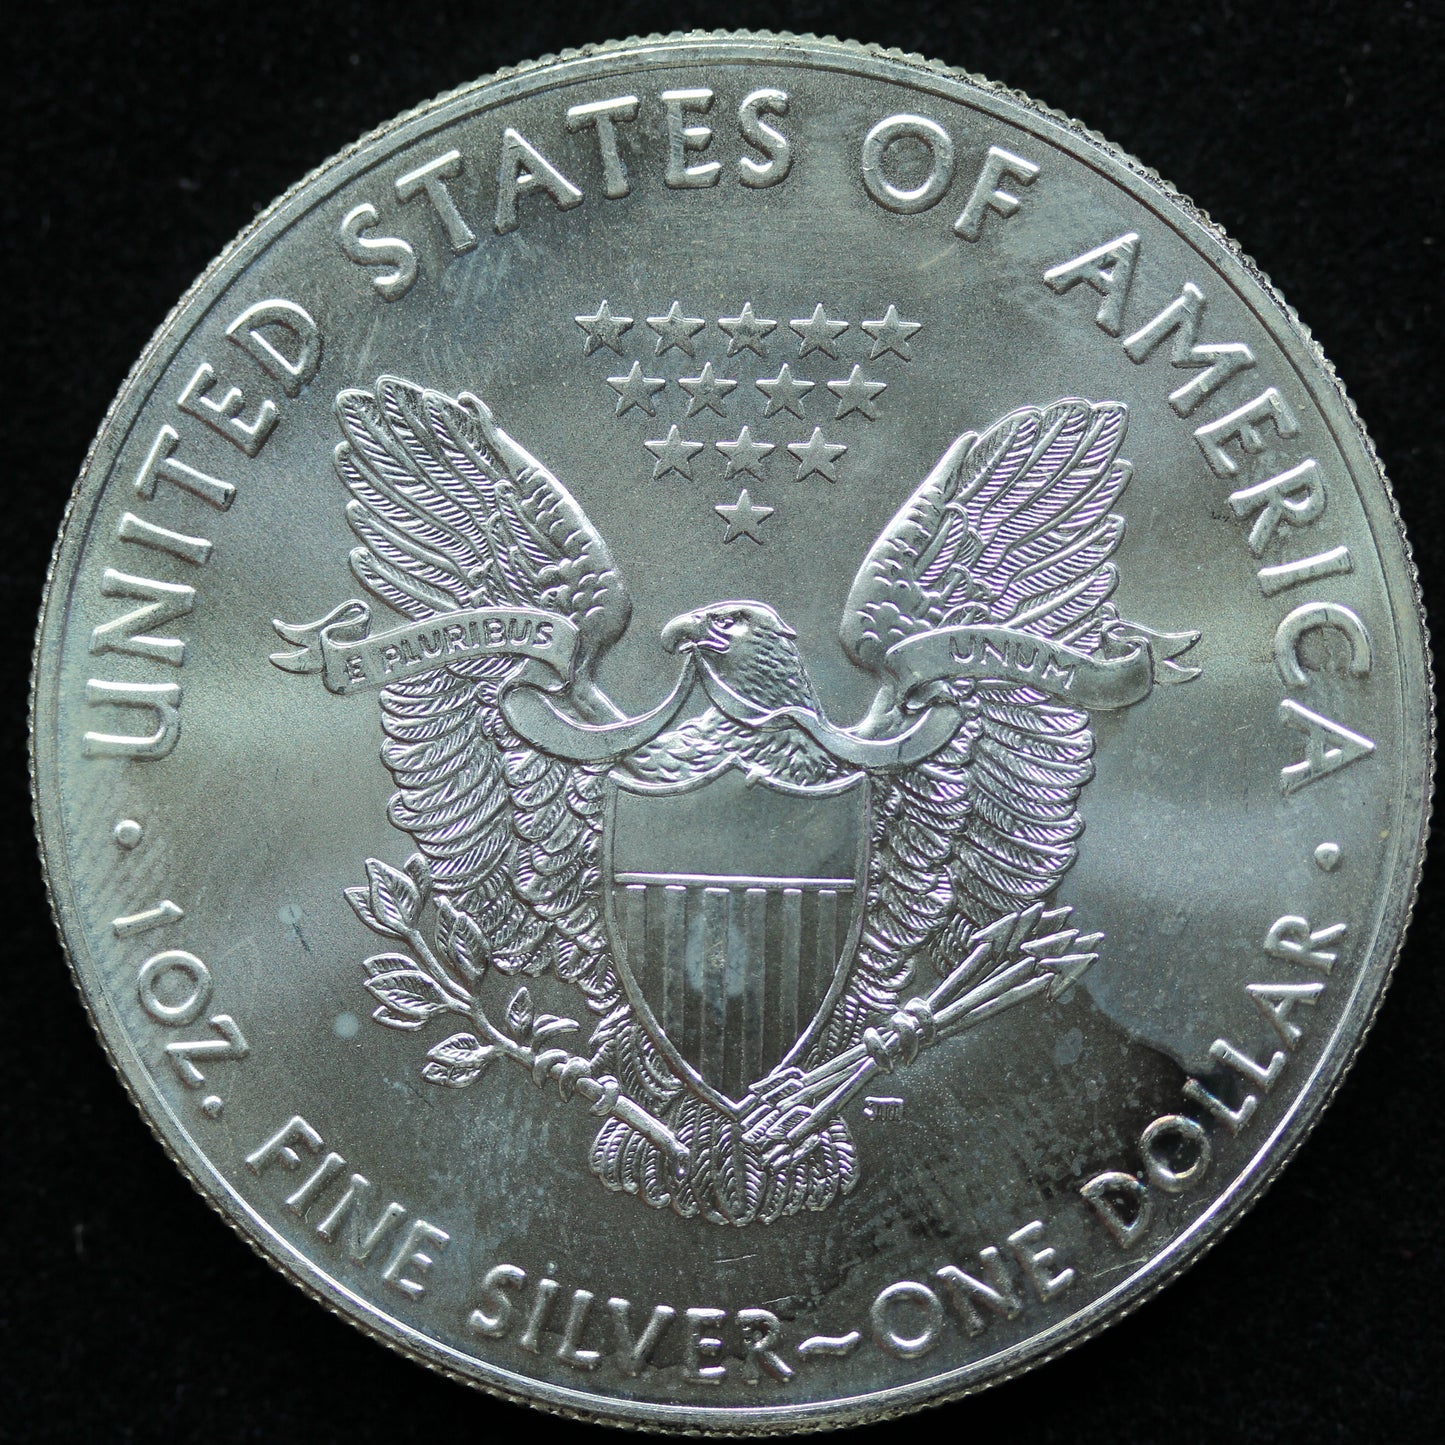 2016 American Silver Eagle $1 .999 Fine Silver - Spots/Marks